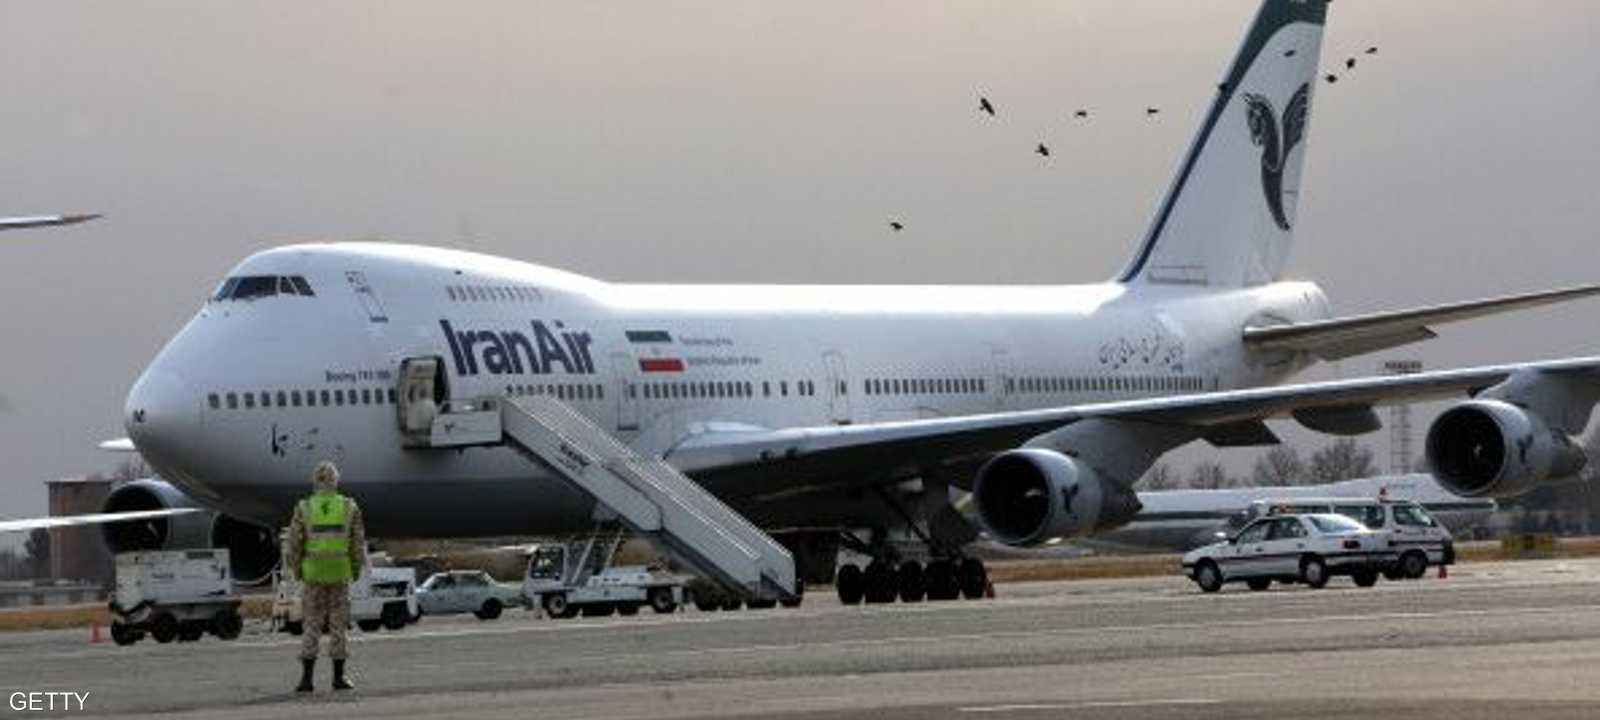 أسطول إيران به طائرات قديمة تم شراؤها في سبعينات القرن الماضي